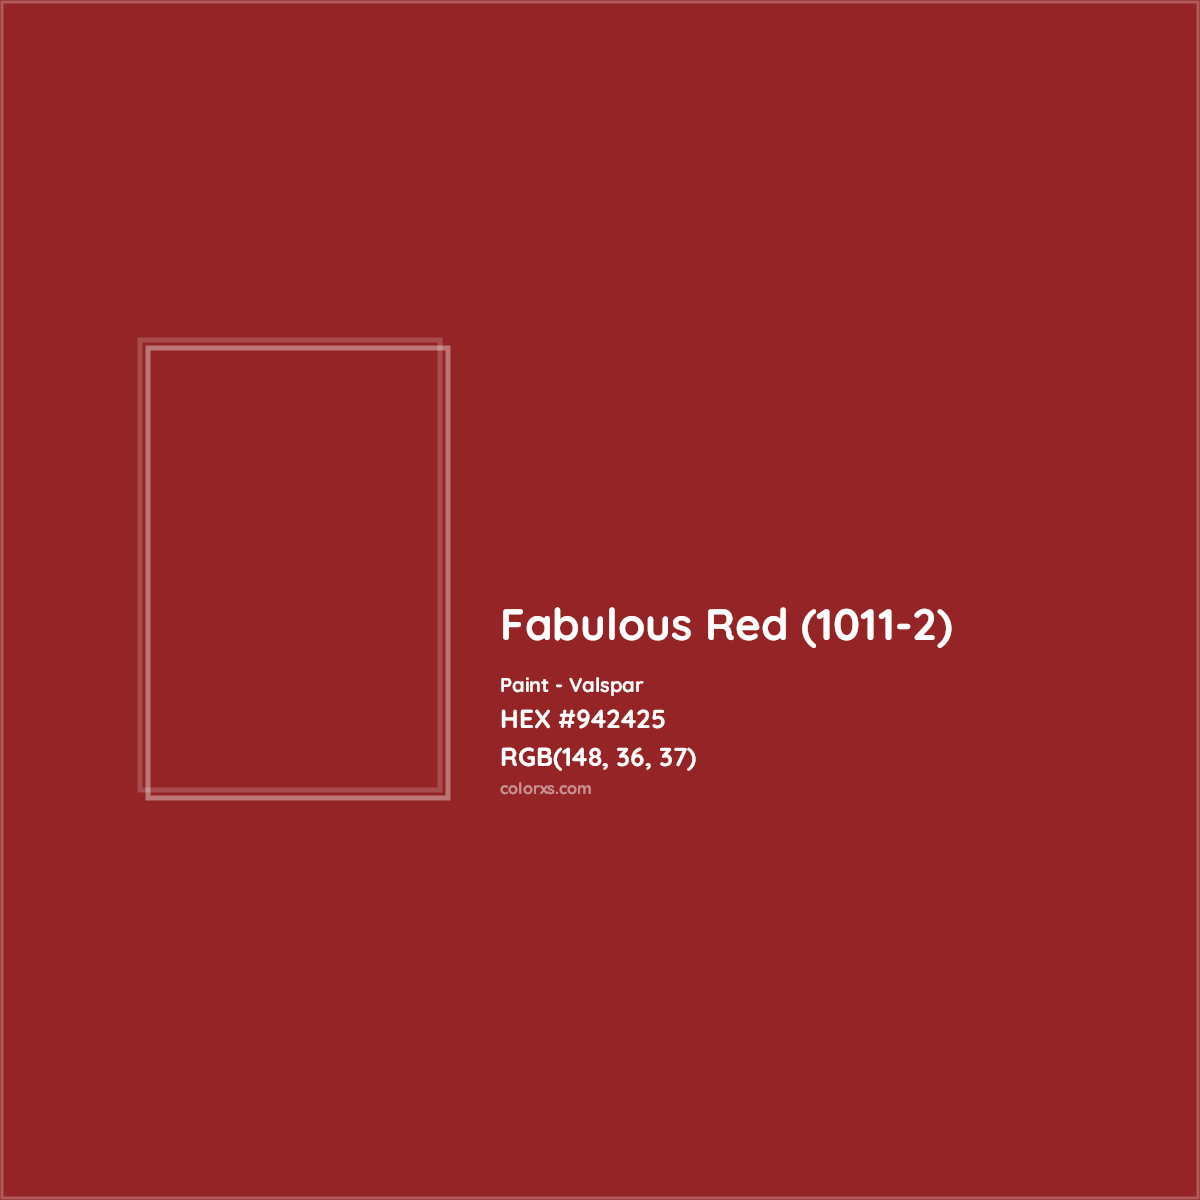 HEX #942425 Fabulous Red (1011-2) Paint Valspar - Color Code